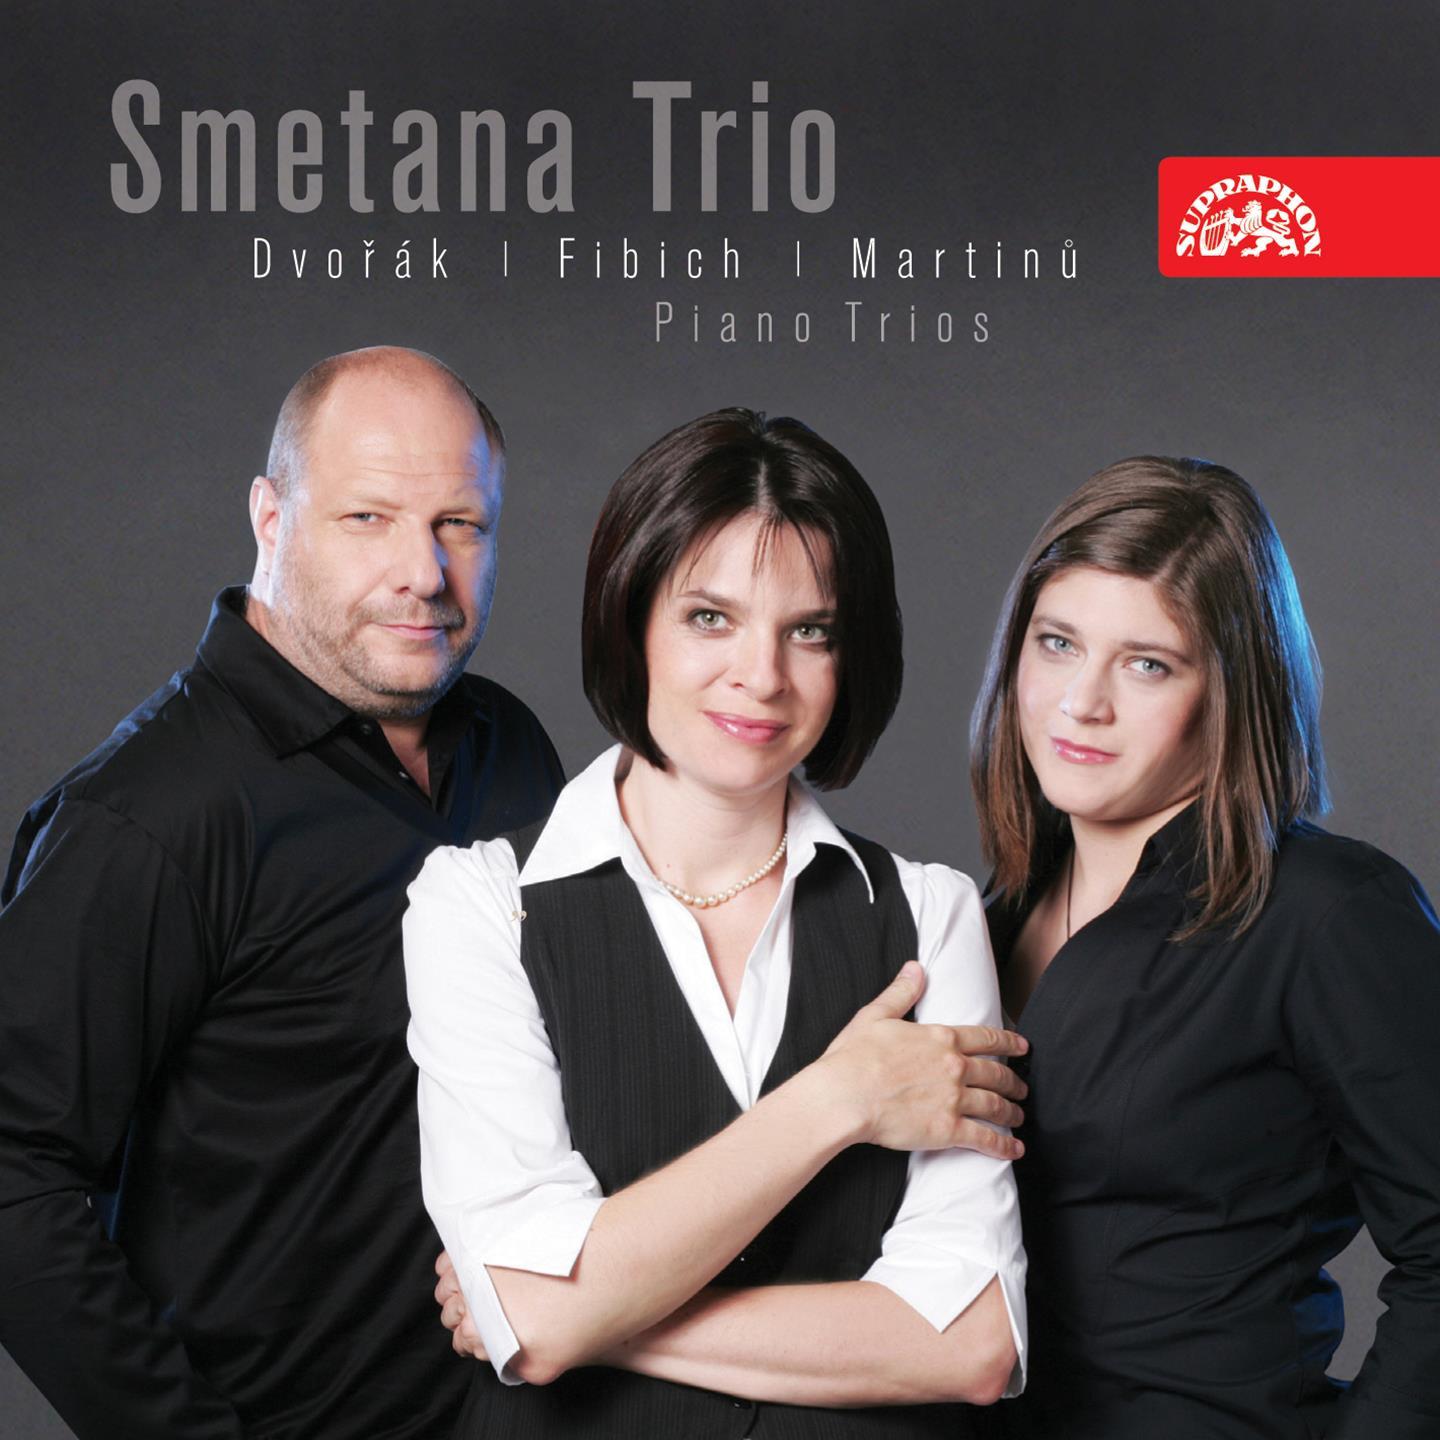 Dvoa k, Fibich and Martin: Piano Trios